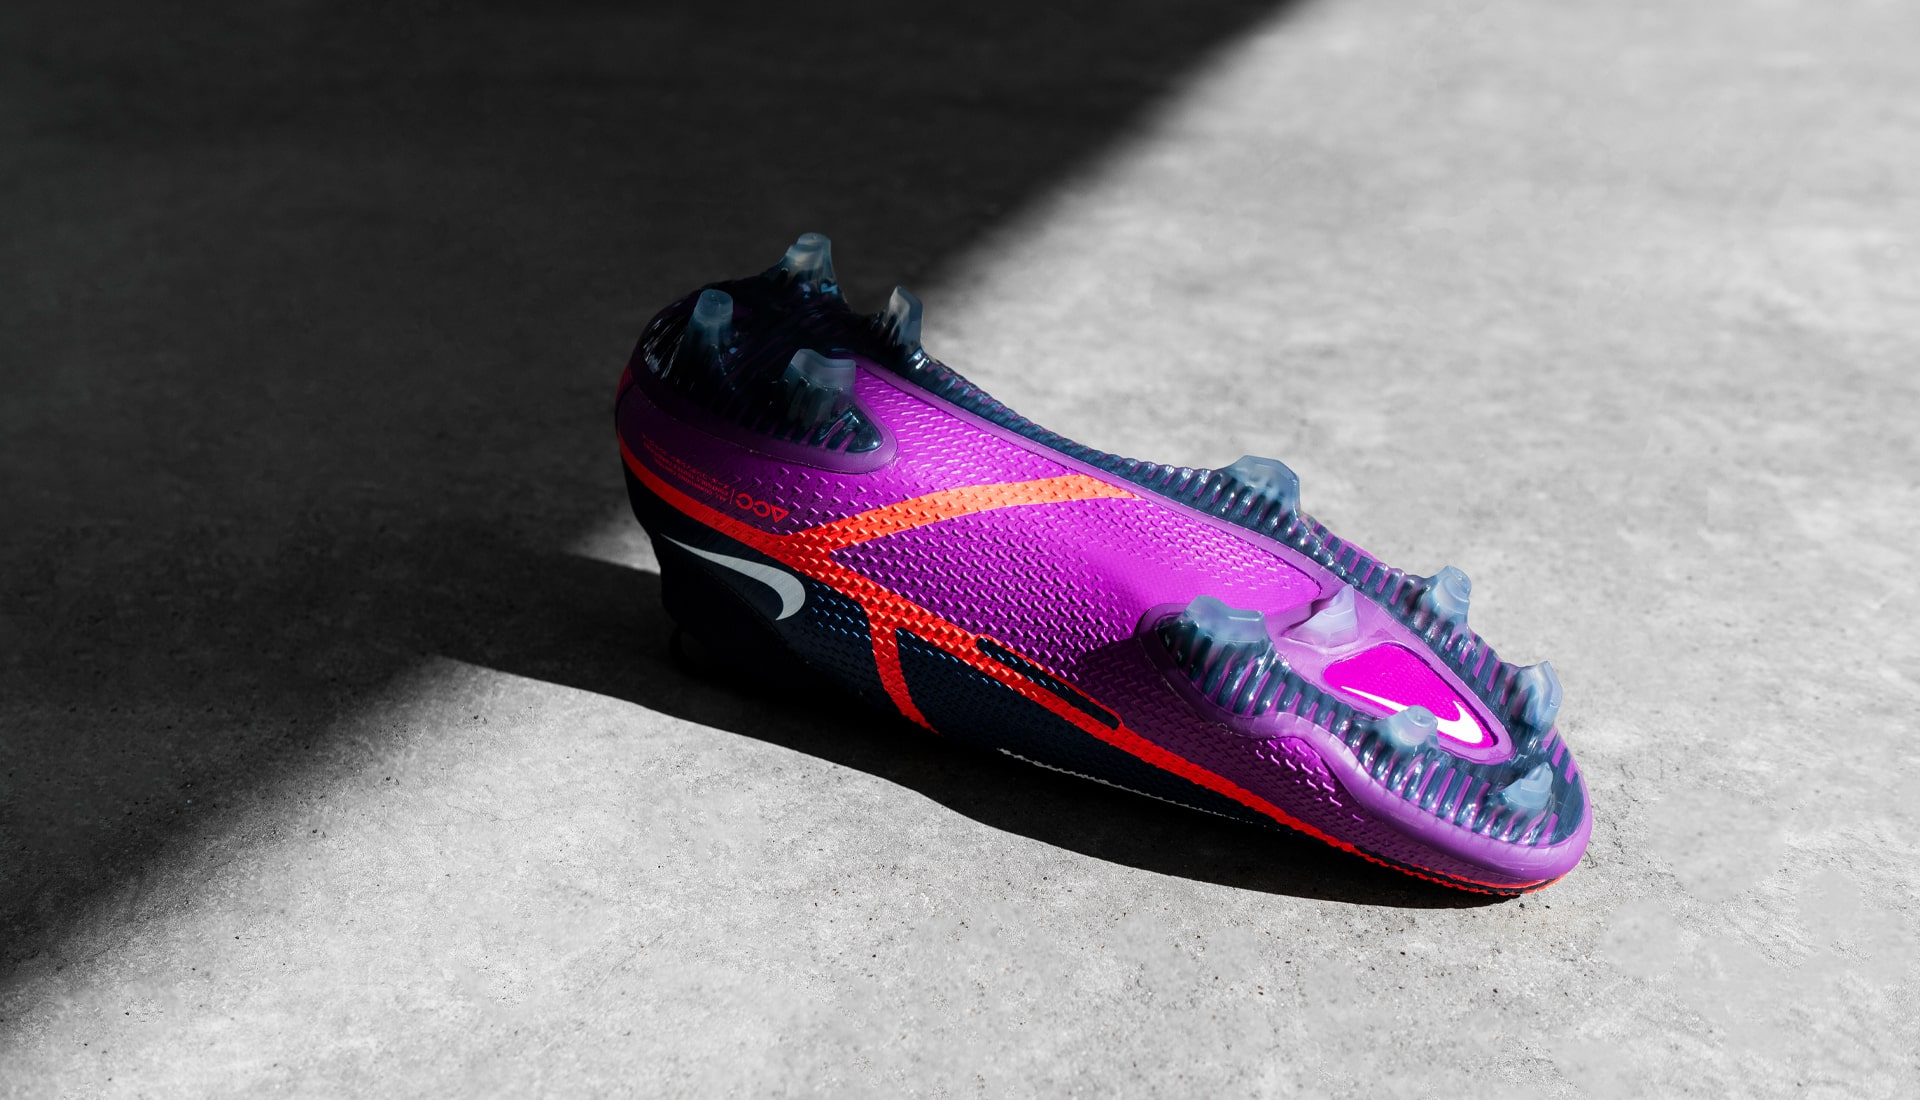 Công nghệ độc đáo của giày đá bóng Nike Phantom GT II UV